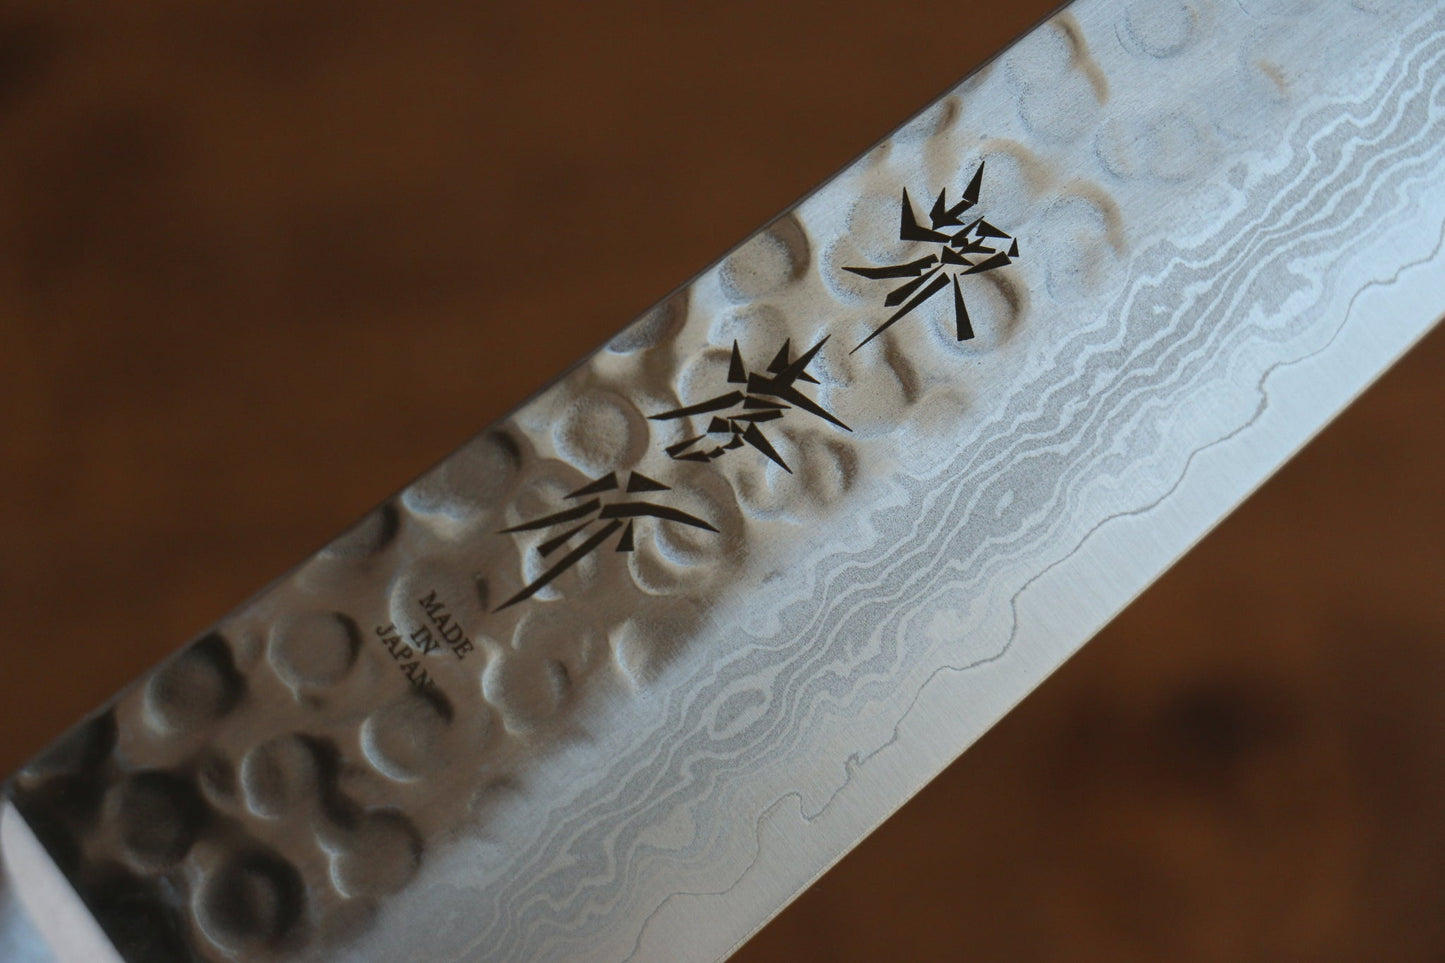 Hochwertiges japanisches Messer – Sakai Takayuki Mehrzweckmesser Gyuto Damaststahl VG10 17 Lagen 180 mm